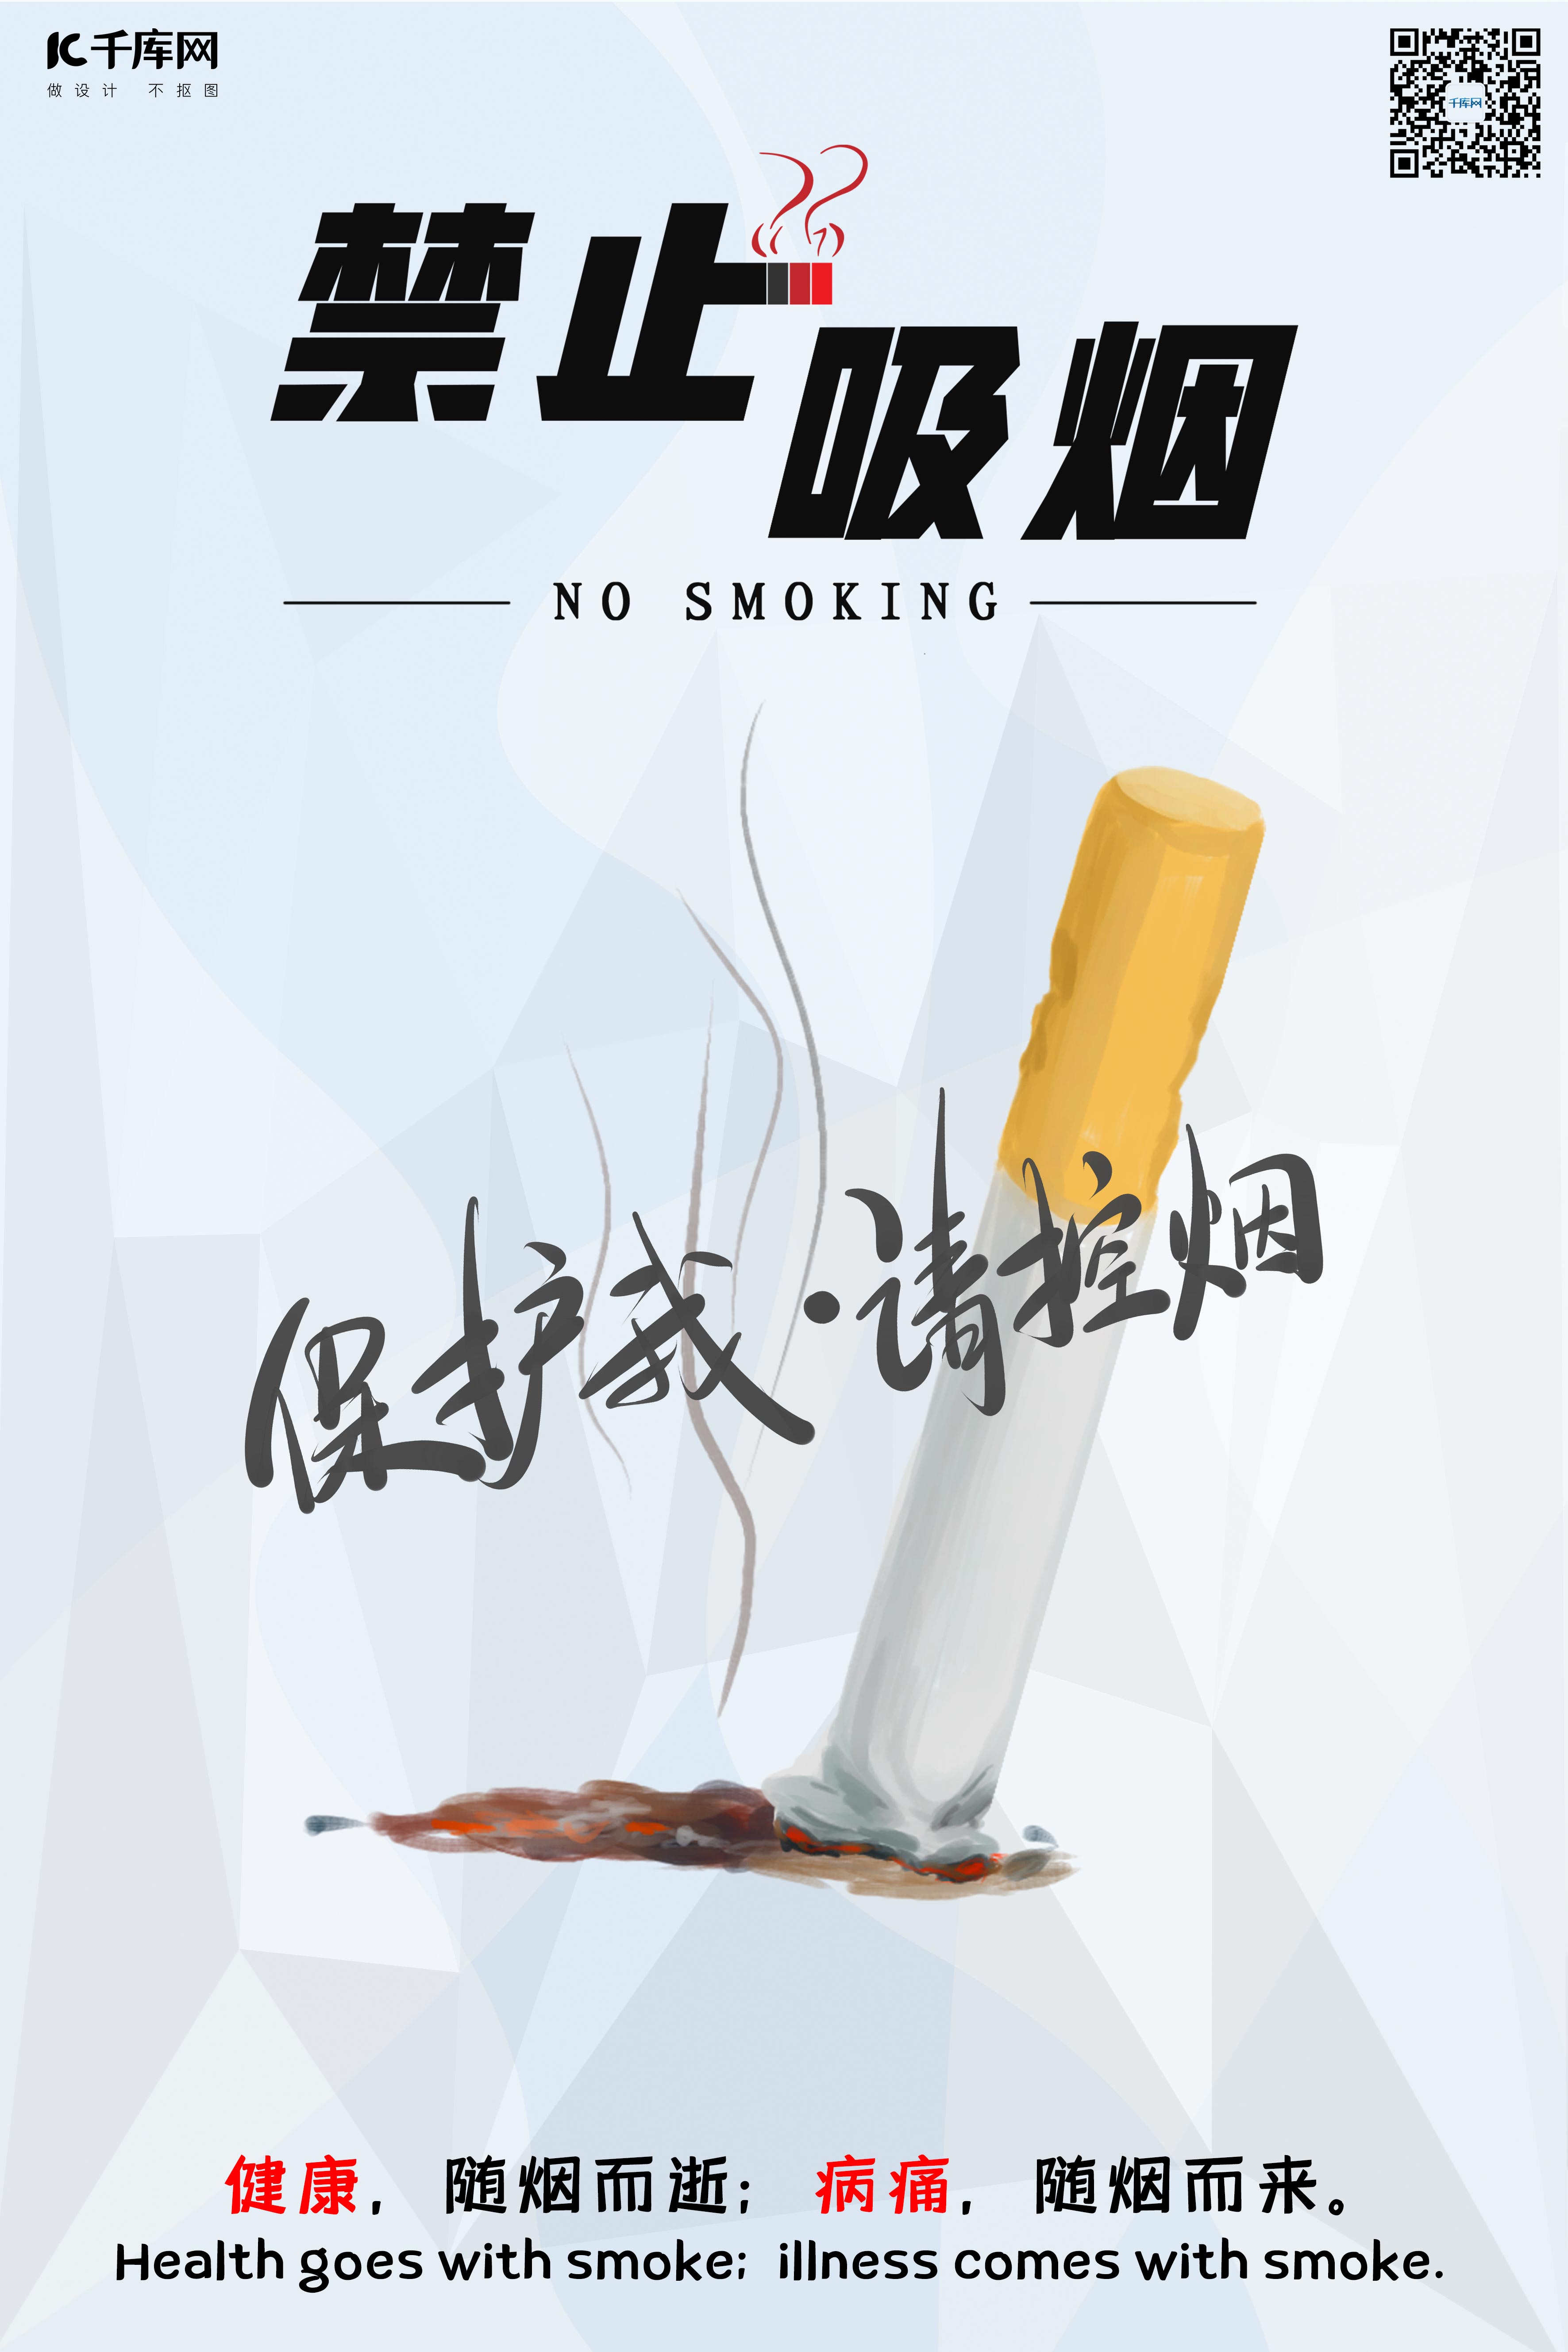 禁烟吸烟有害健康禁止吸烟公益海报图片